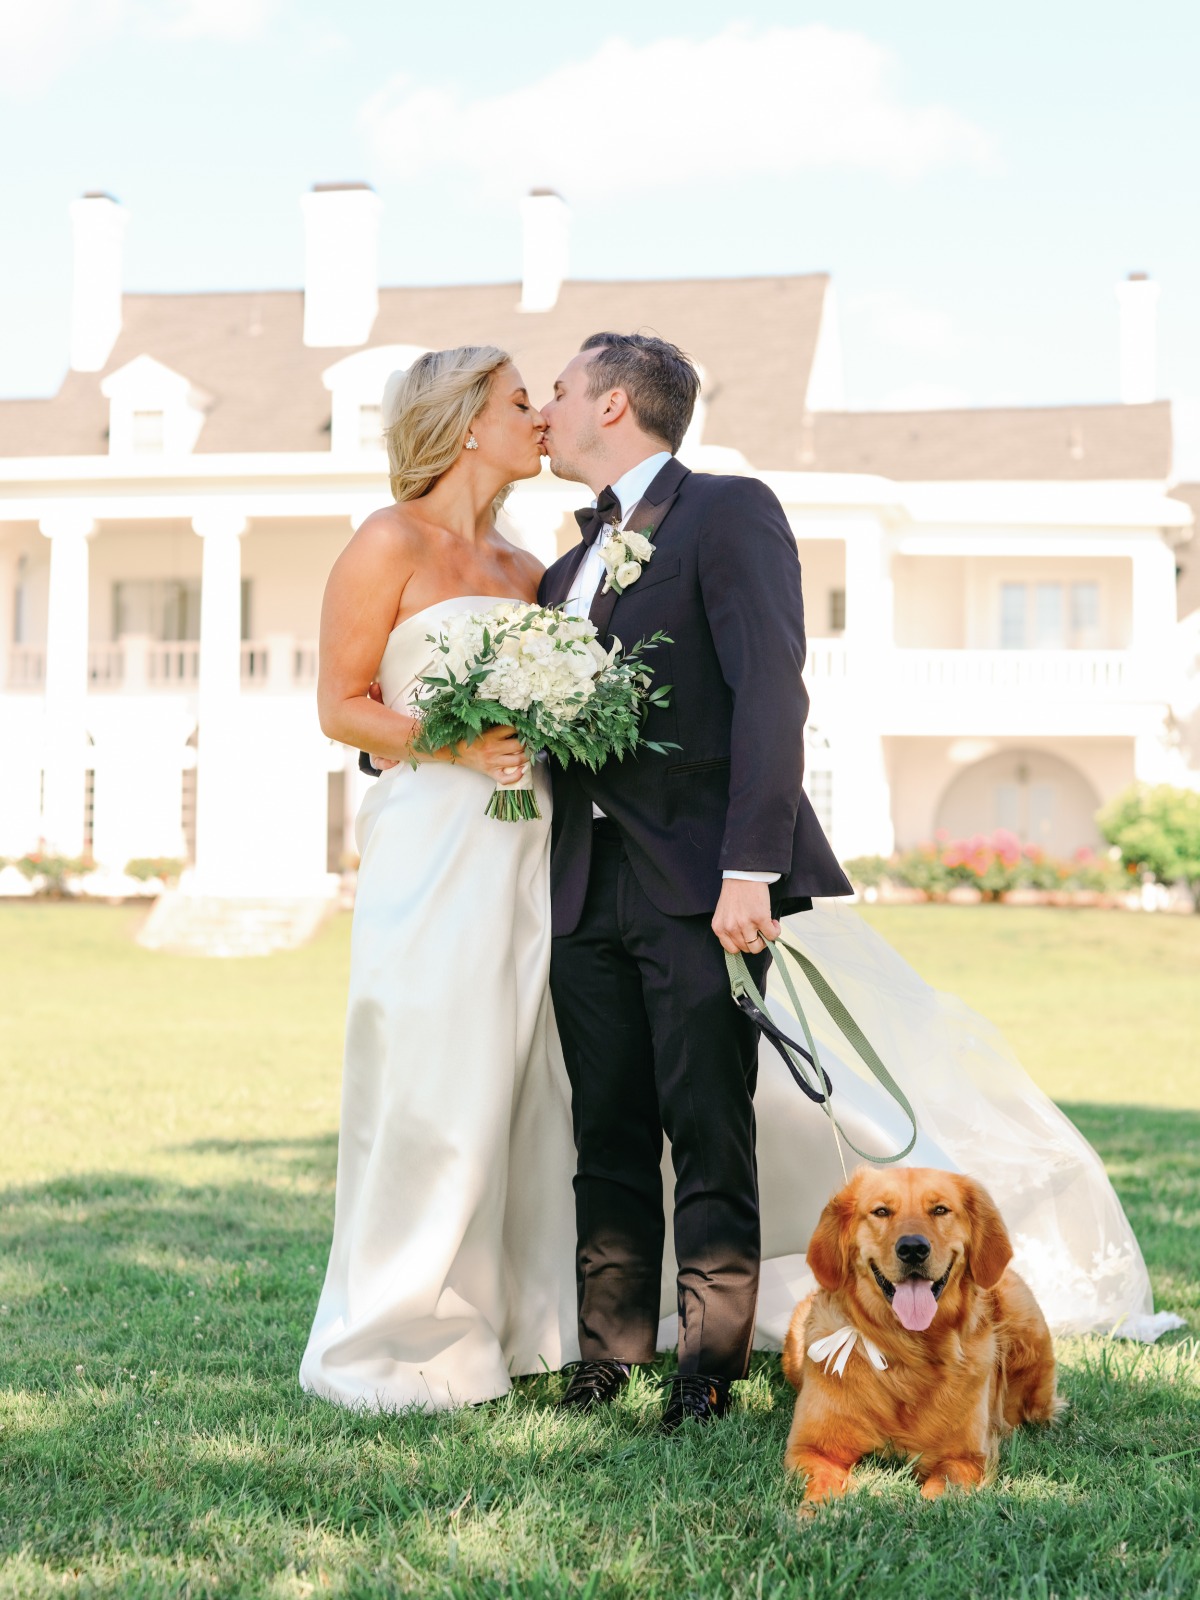 Maryland wedding couple with dog ring bearer